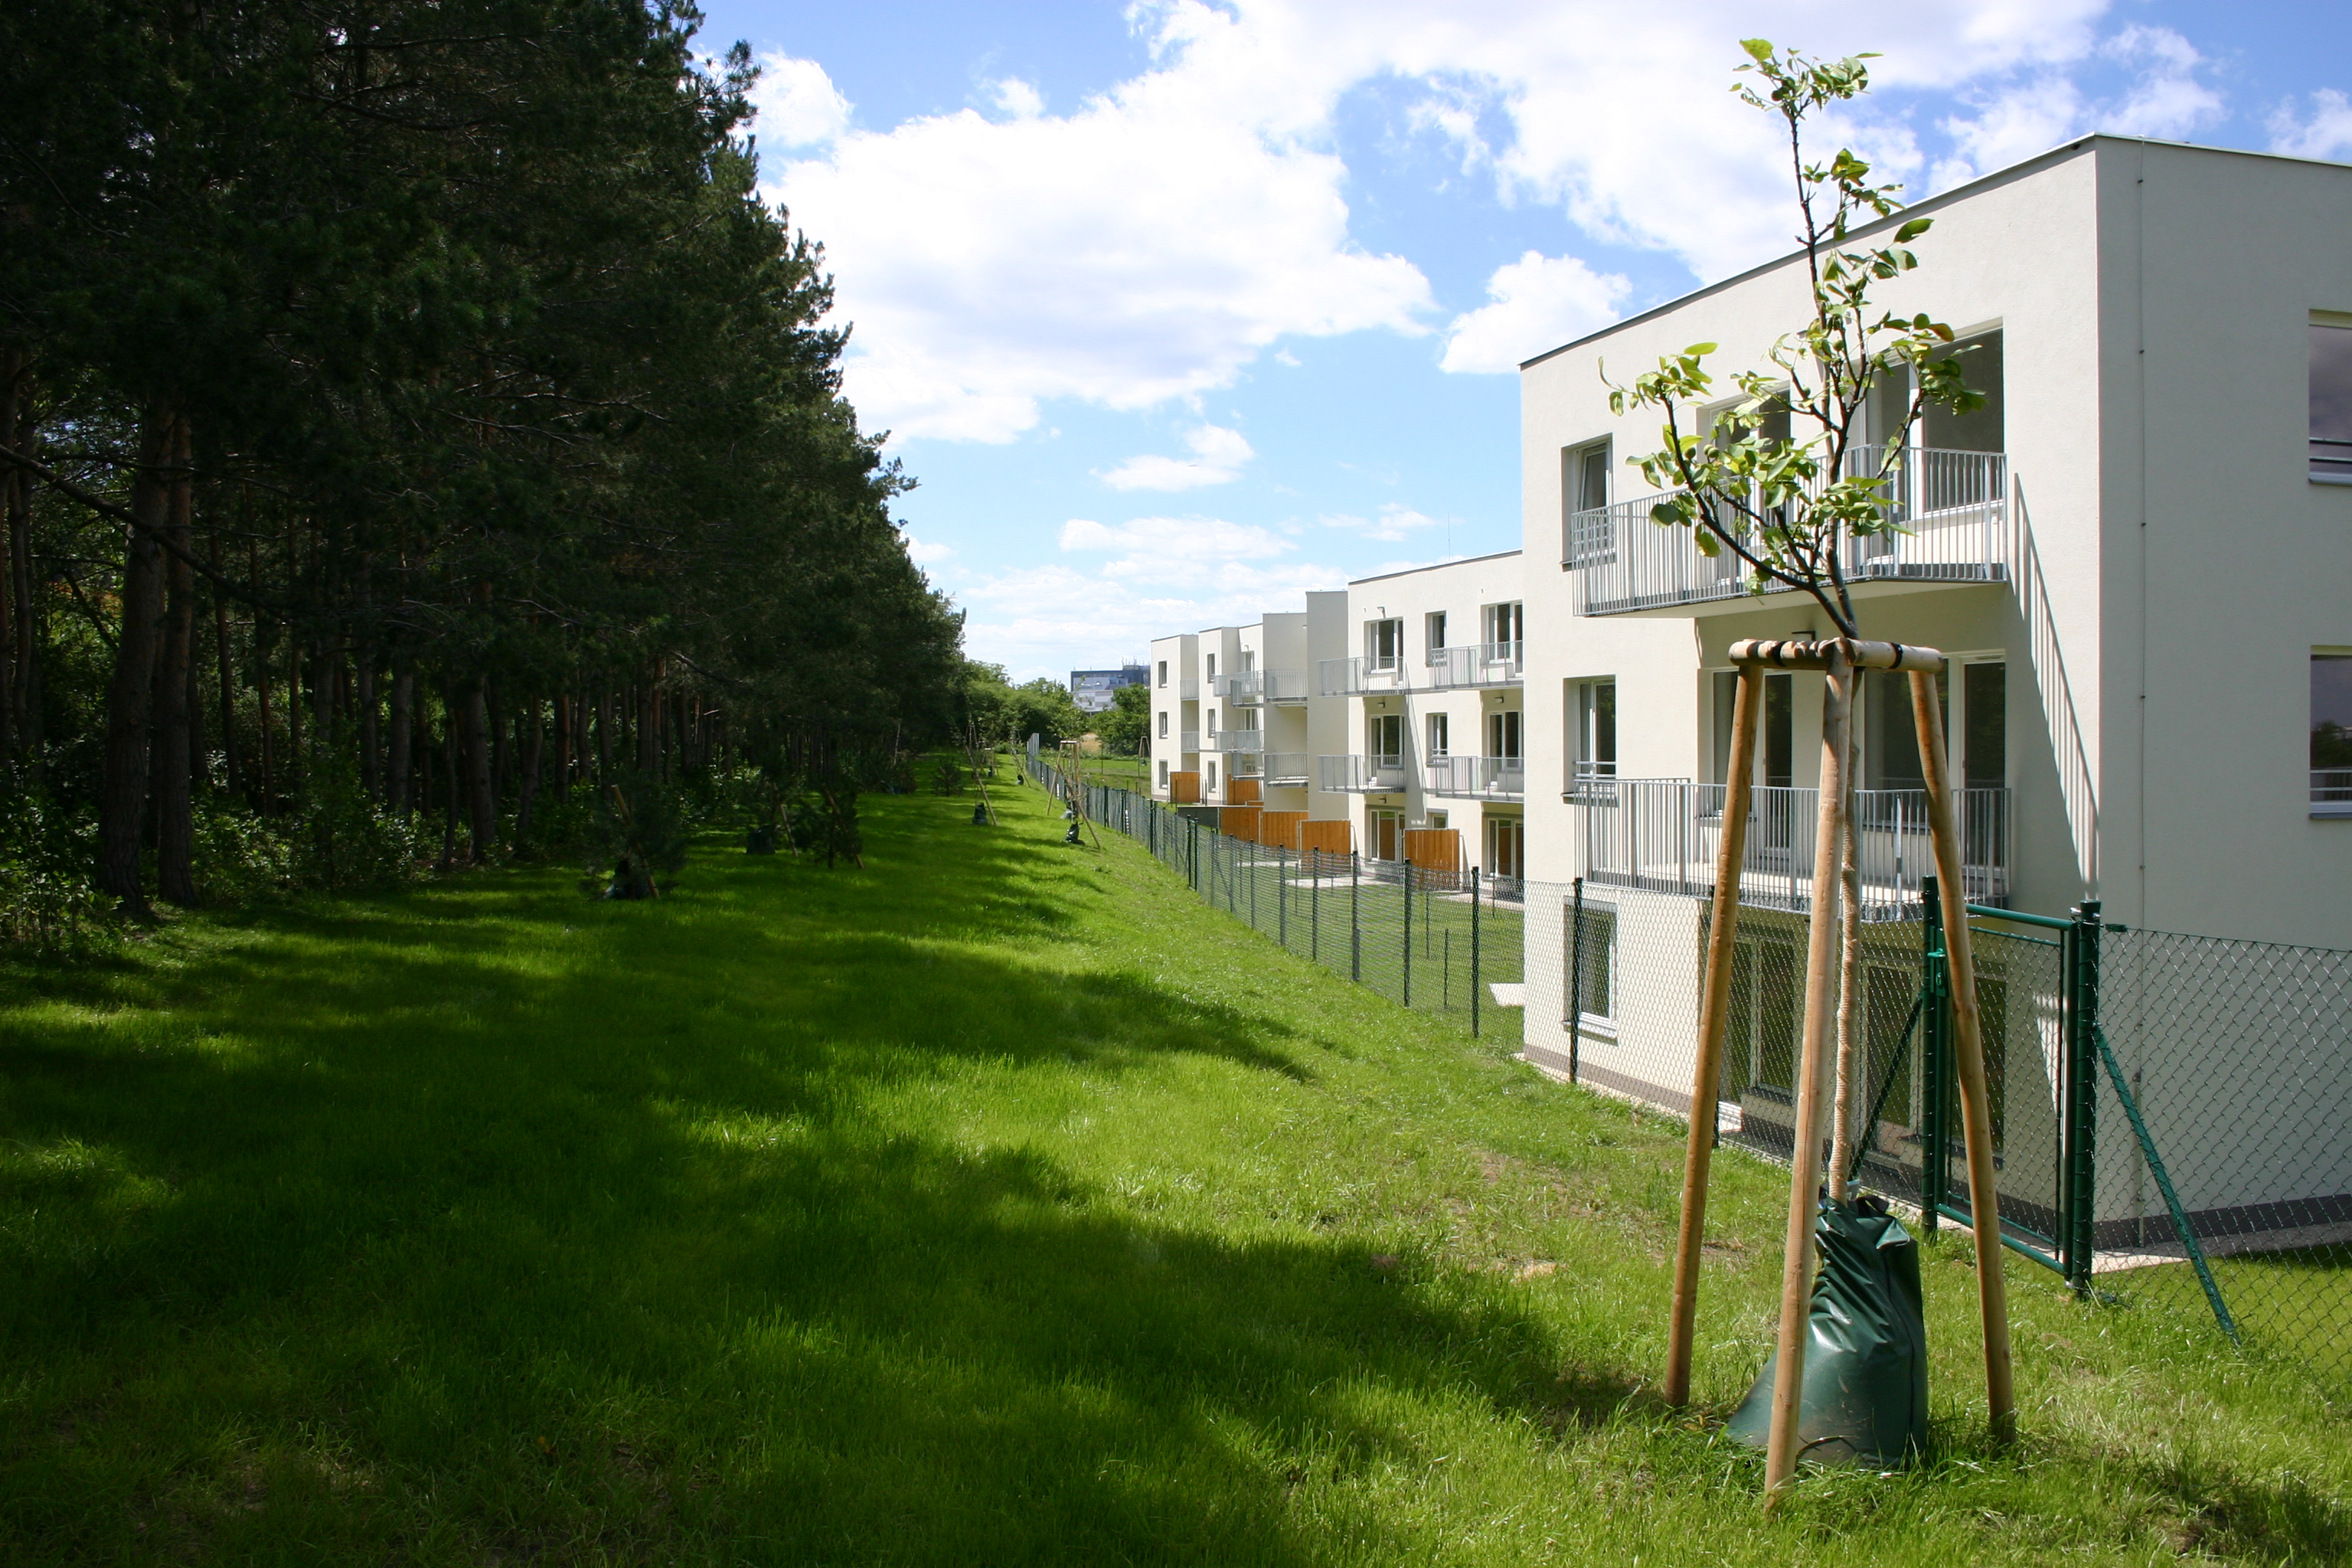 Rezidence Štěrboholy - Building construction